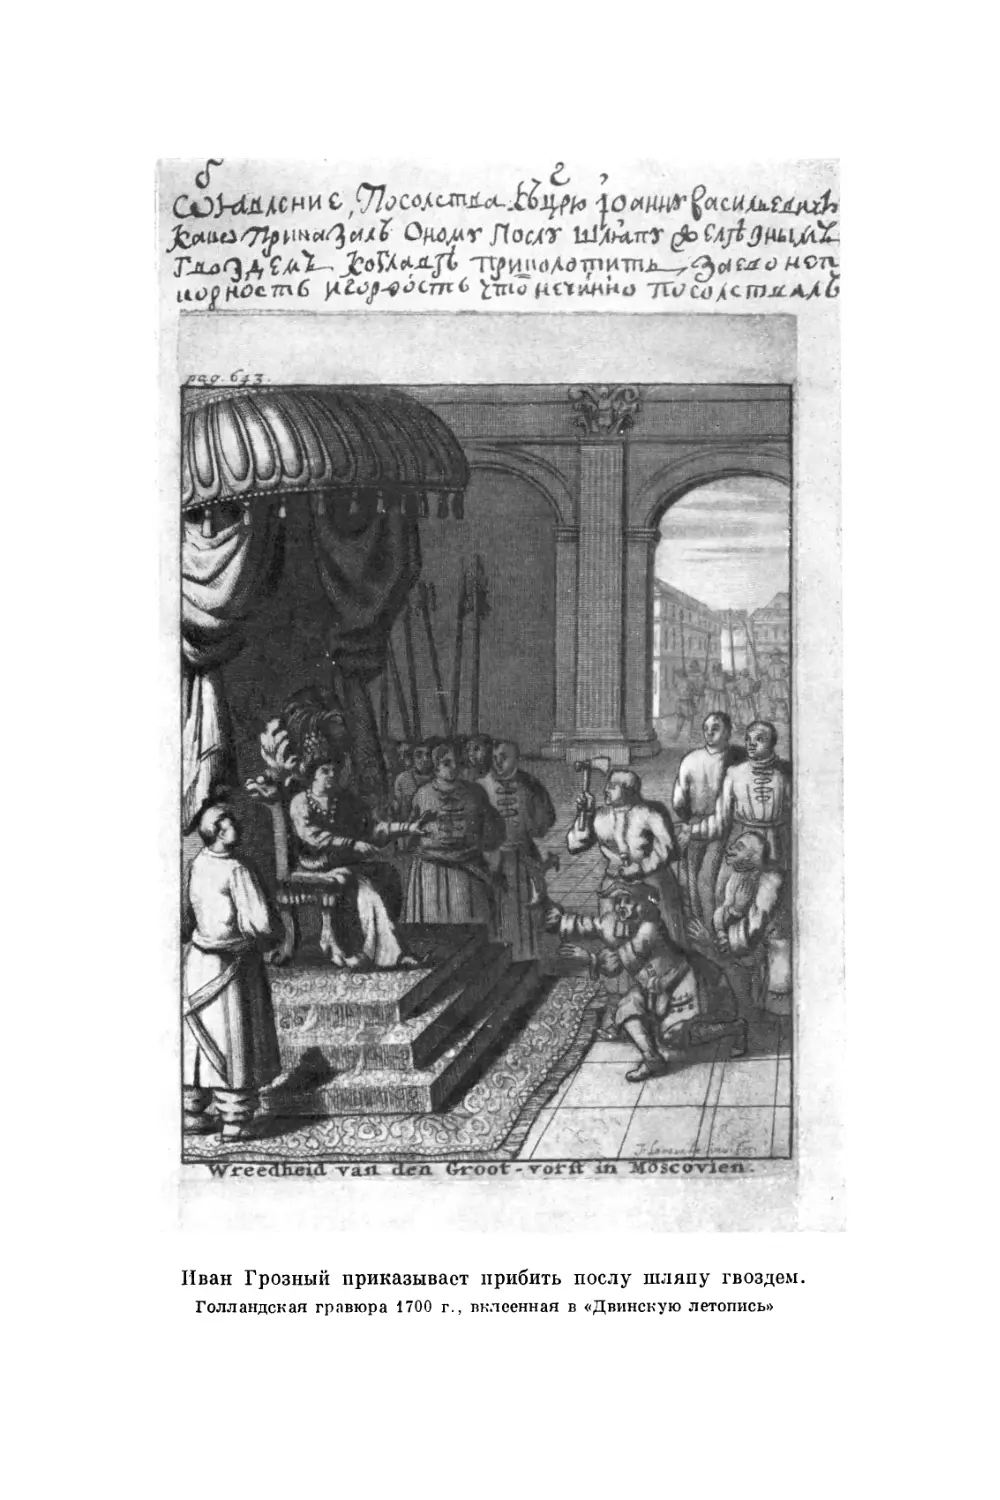 Вклейка. Иван Грозный приказывает прибить послу шляпу гвоздем. Голландская гравюра 1700 г., вклеенная в «Двинскую летопись»